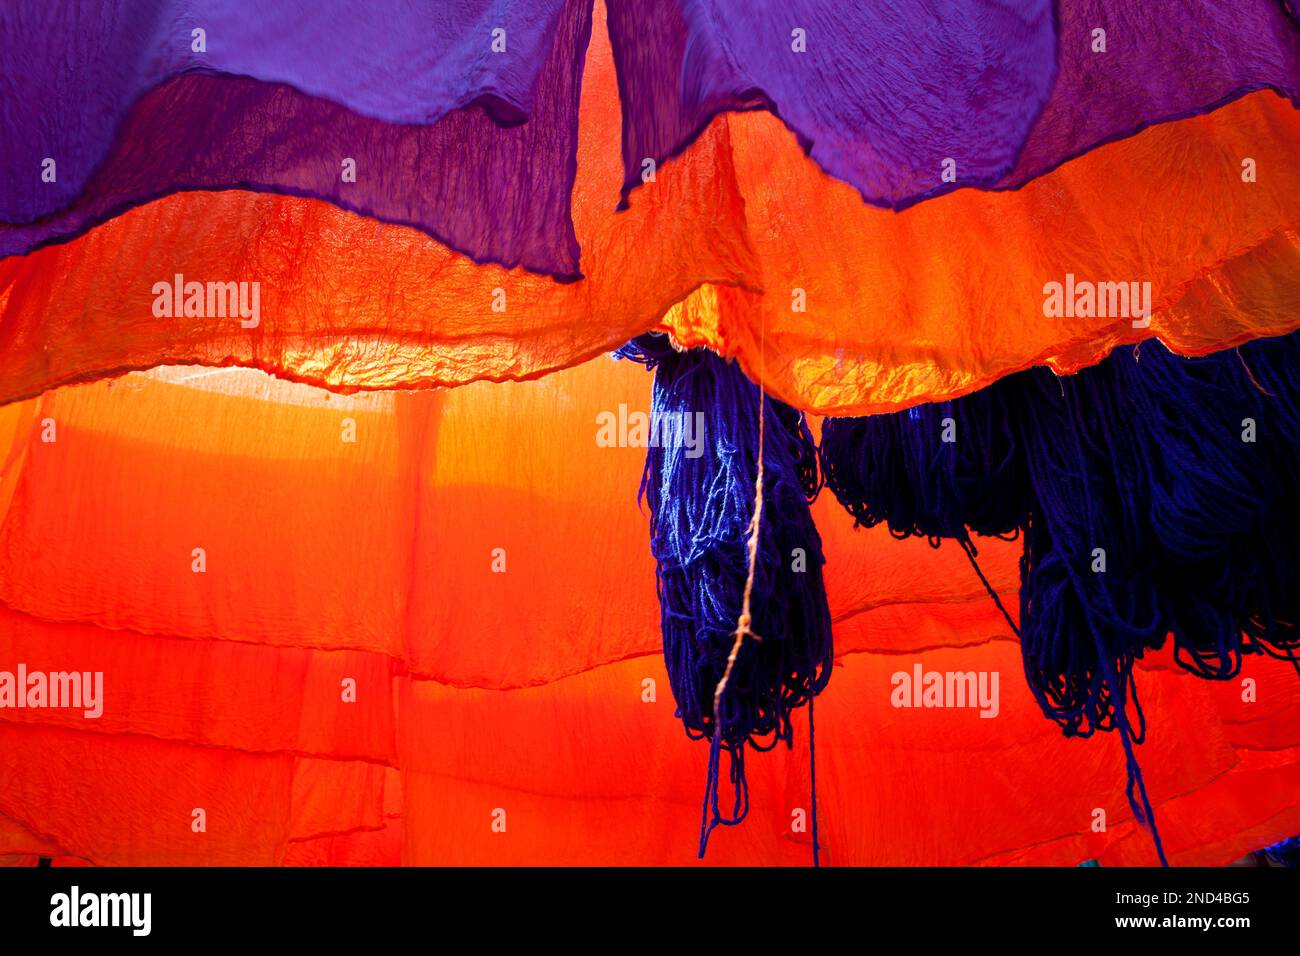 Im Färbemarkt, Marrakesch, Marokko, Afrika, hängen Stoffroste und Wolle zum Trocknen Stockfoto